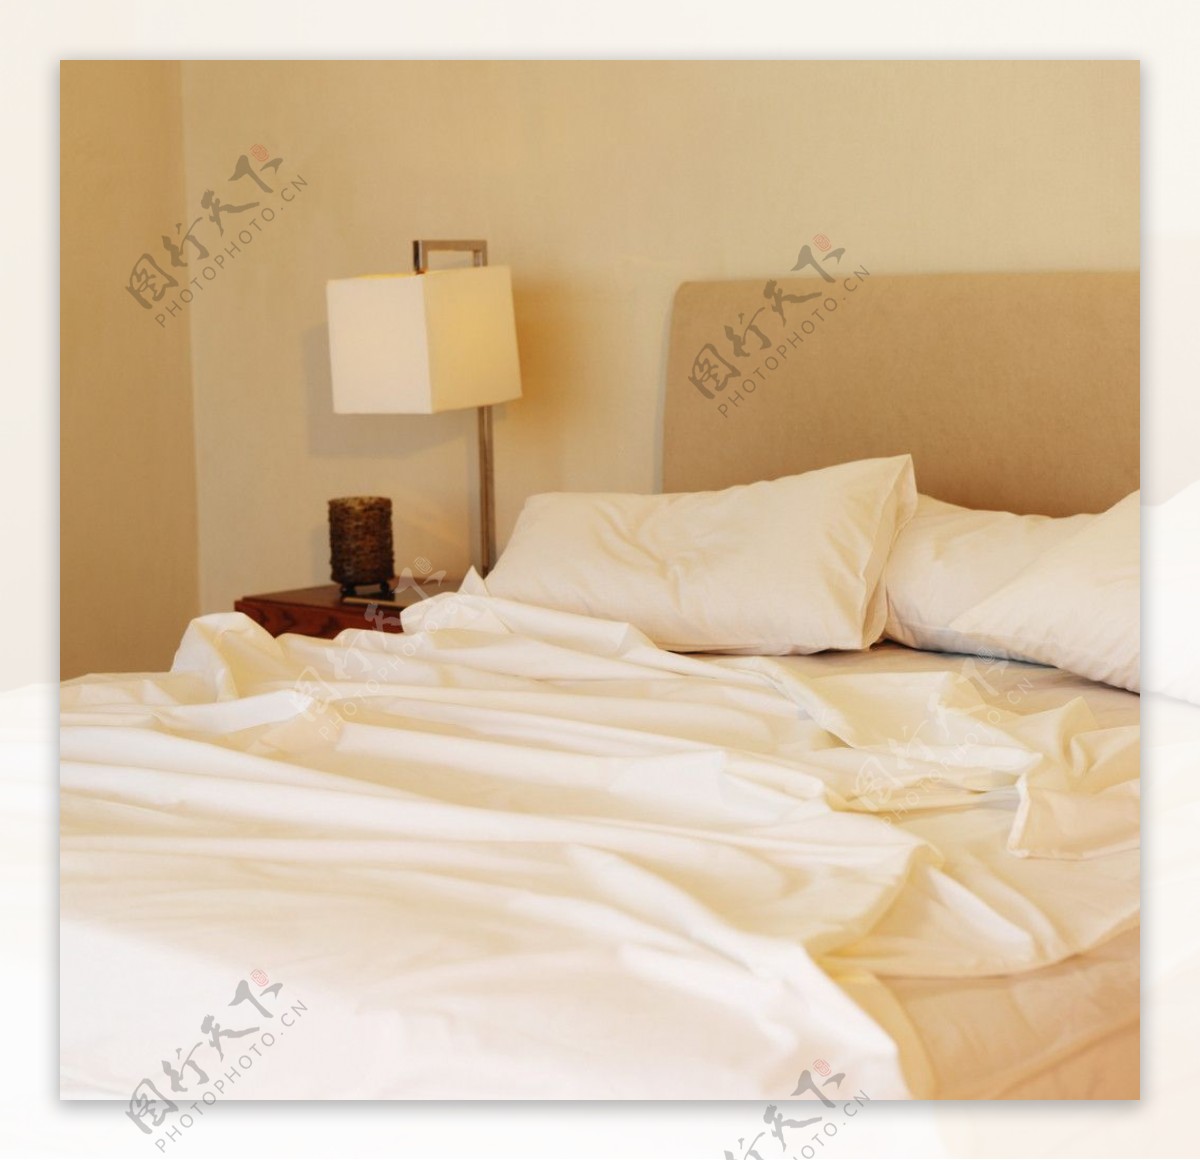 旅馆的床图片